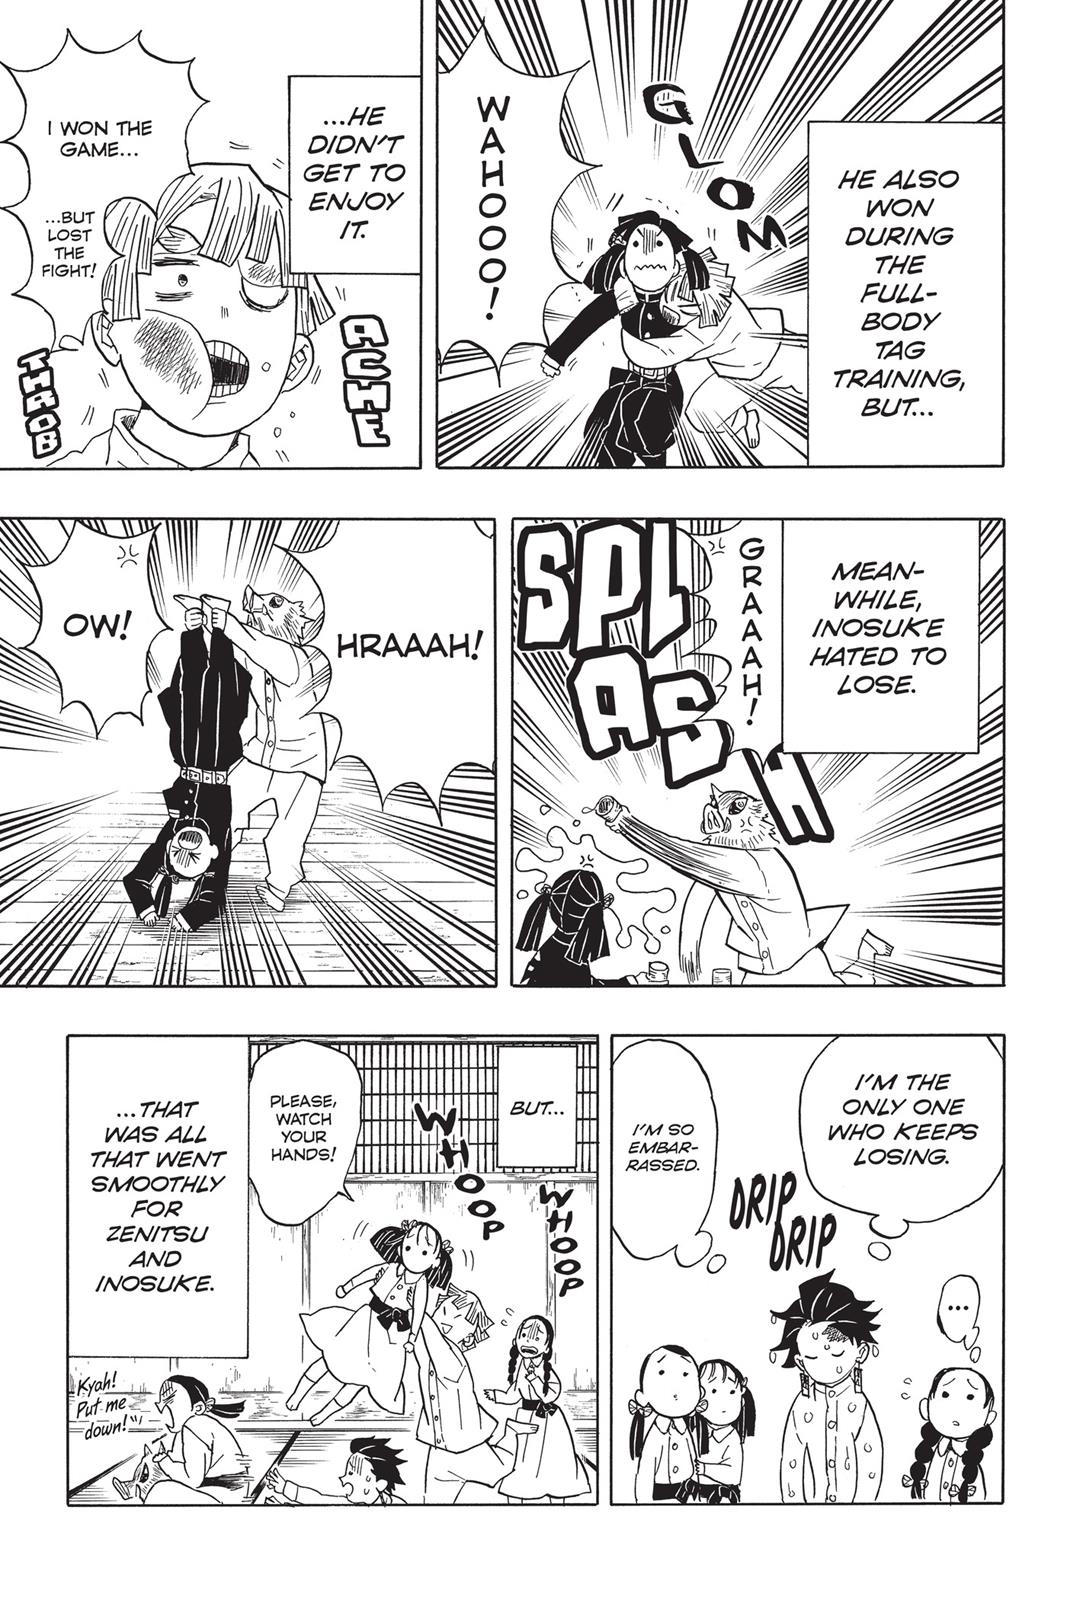 Demon Slayer Manga Manga Chapter - 49 - image 13